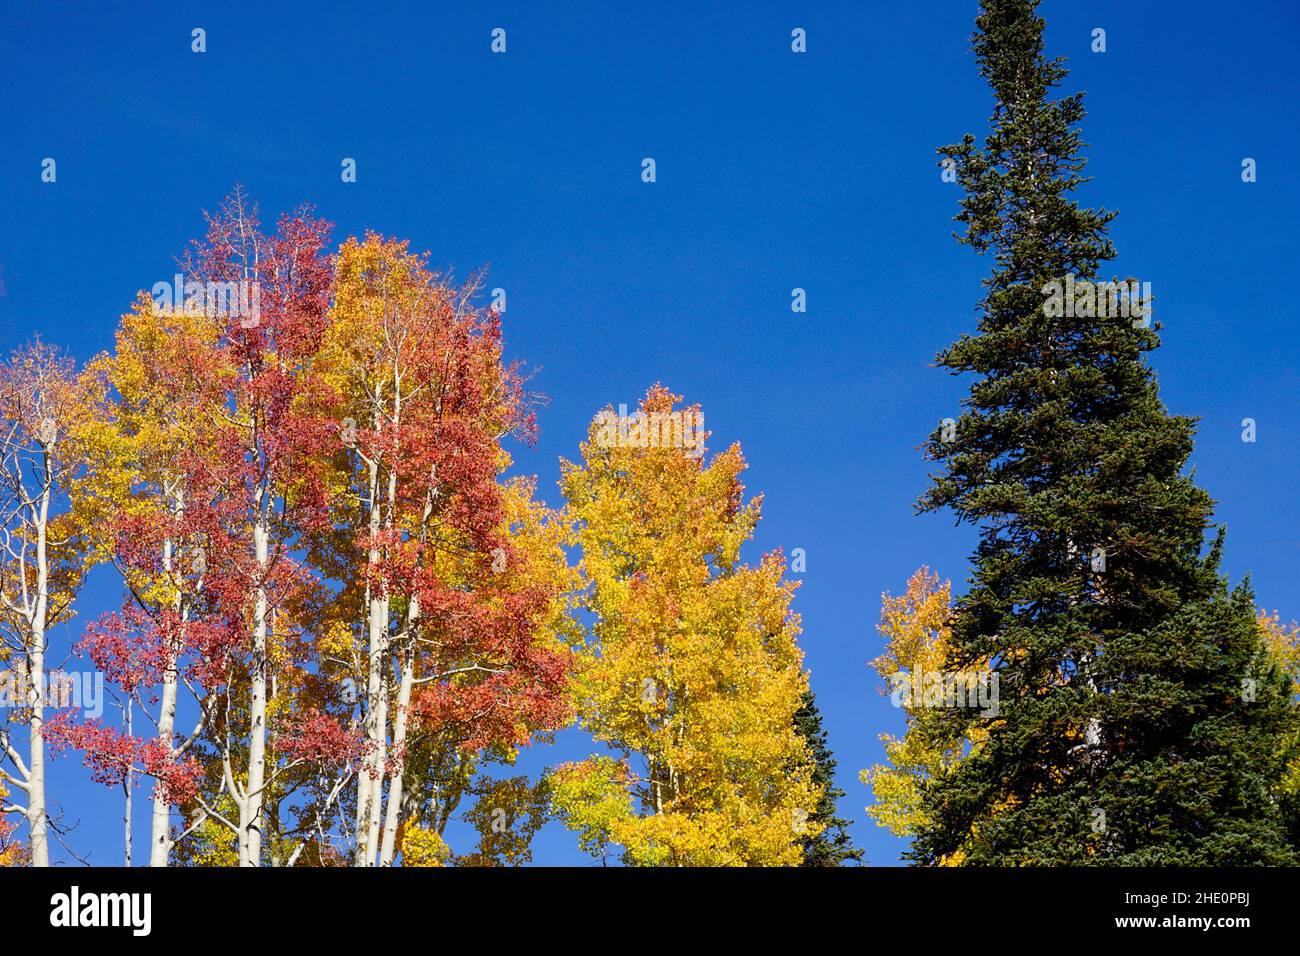 Colores otoñales en Colorado con álamos amarillos y naranjas y un verde perenne contra un cielo azul claro. Foto de stock